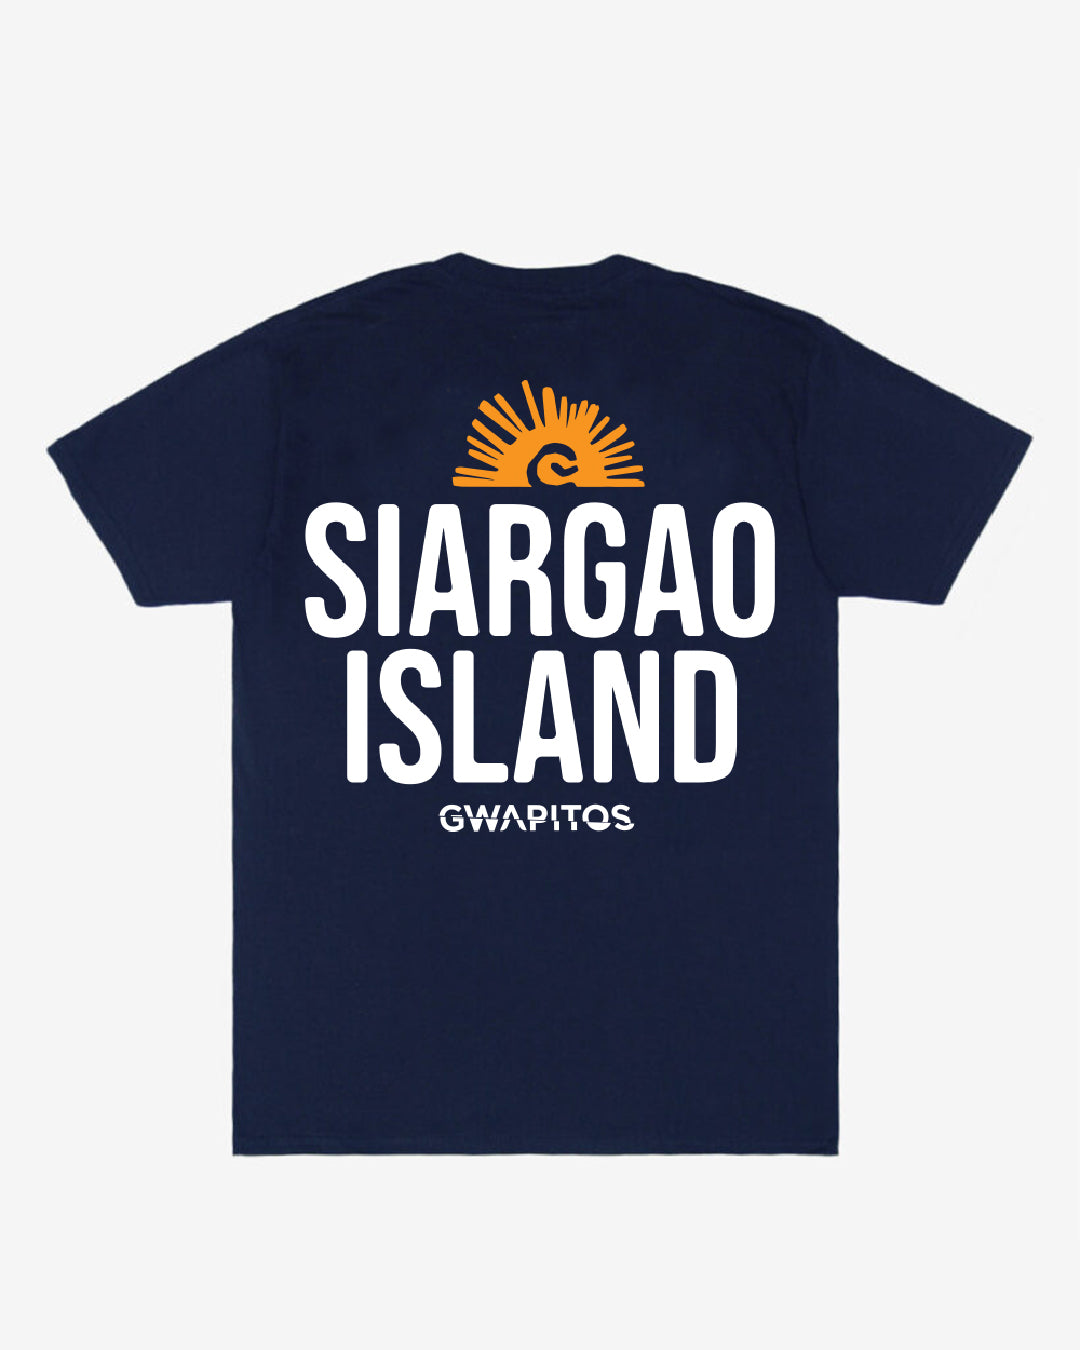 Siargao Island Tee